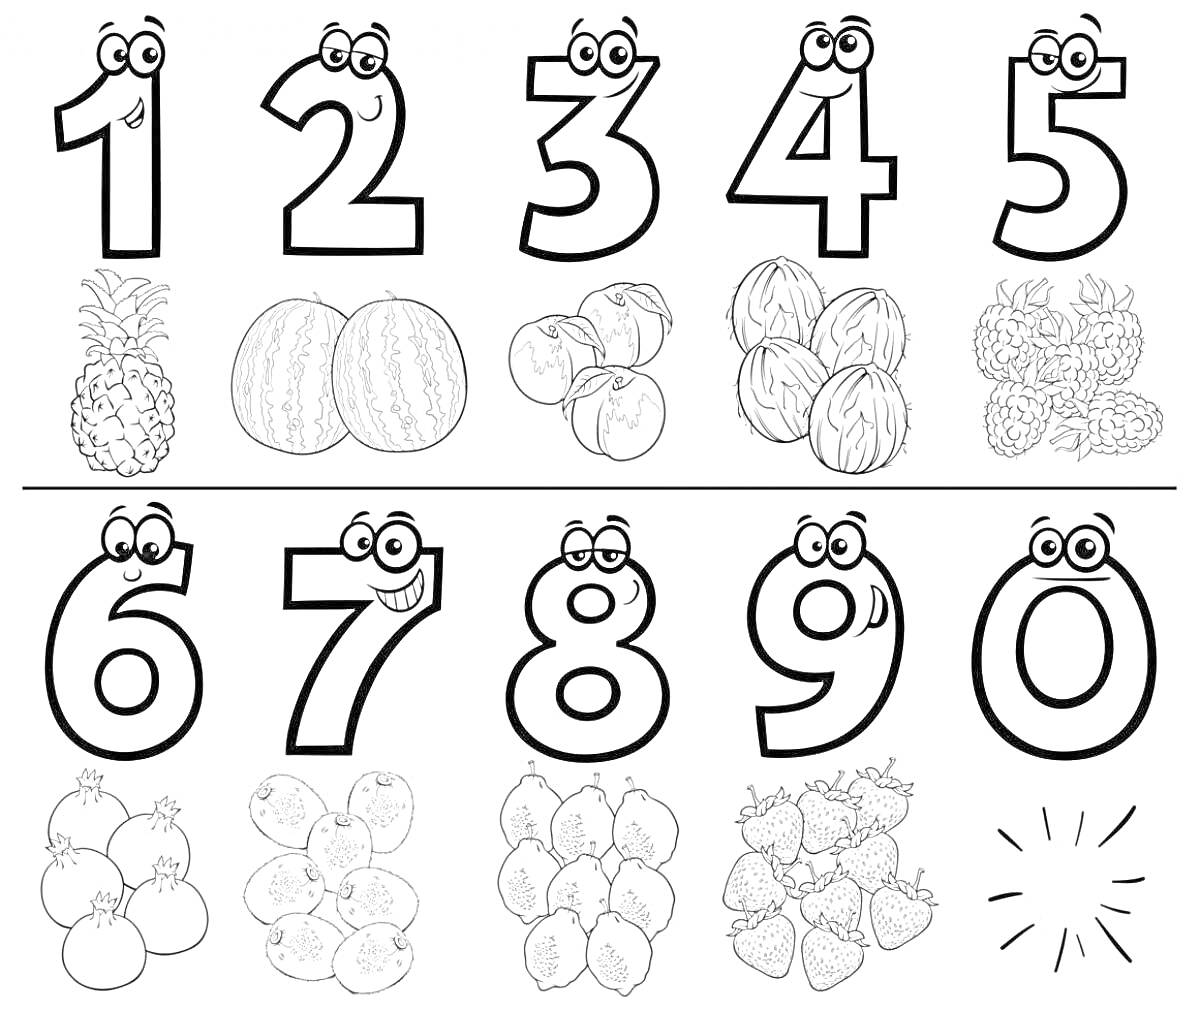 Раскраска цифры от 1 до 10, ананас, арбузы, кокосы, клубника, гранаты, яблоки, апельсины, виноград, малина, лимон